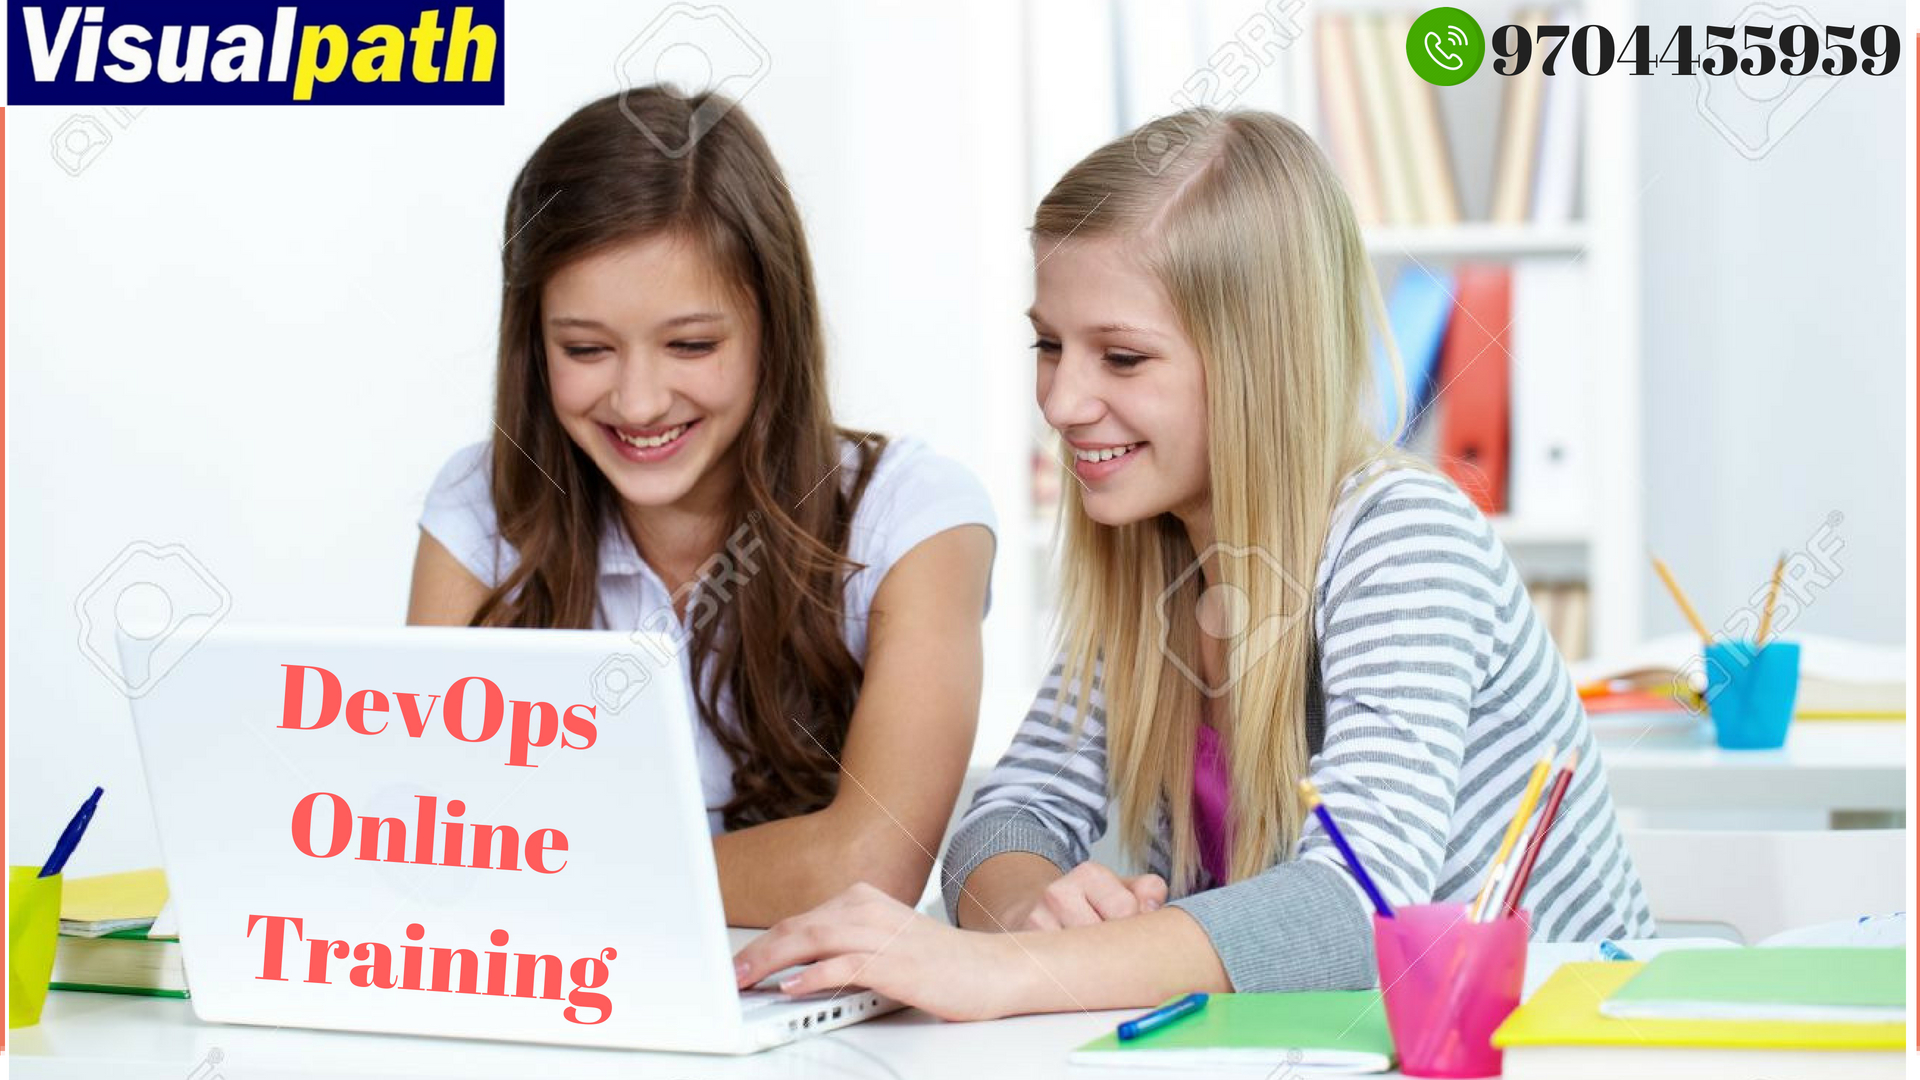 DevOps Online Training | DevOps Online Training in Hyderabad, Hyderabad, Andhra Pradesh, India